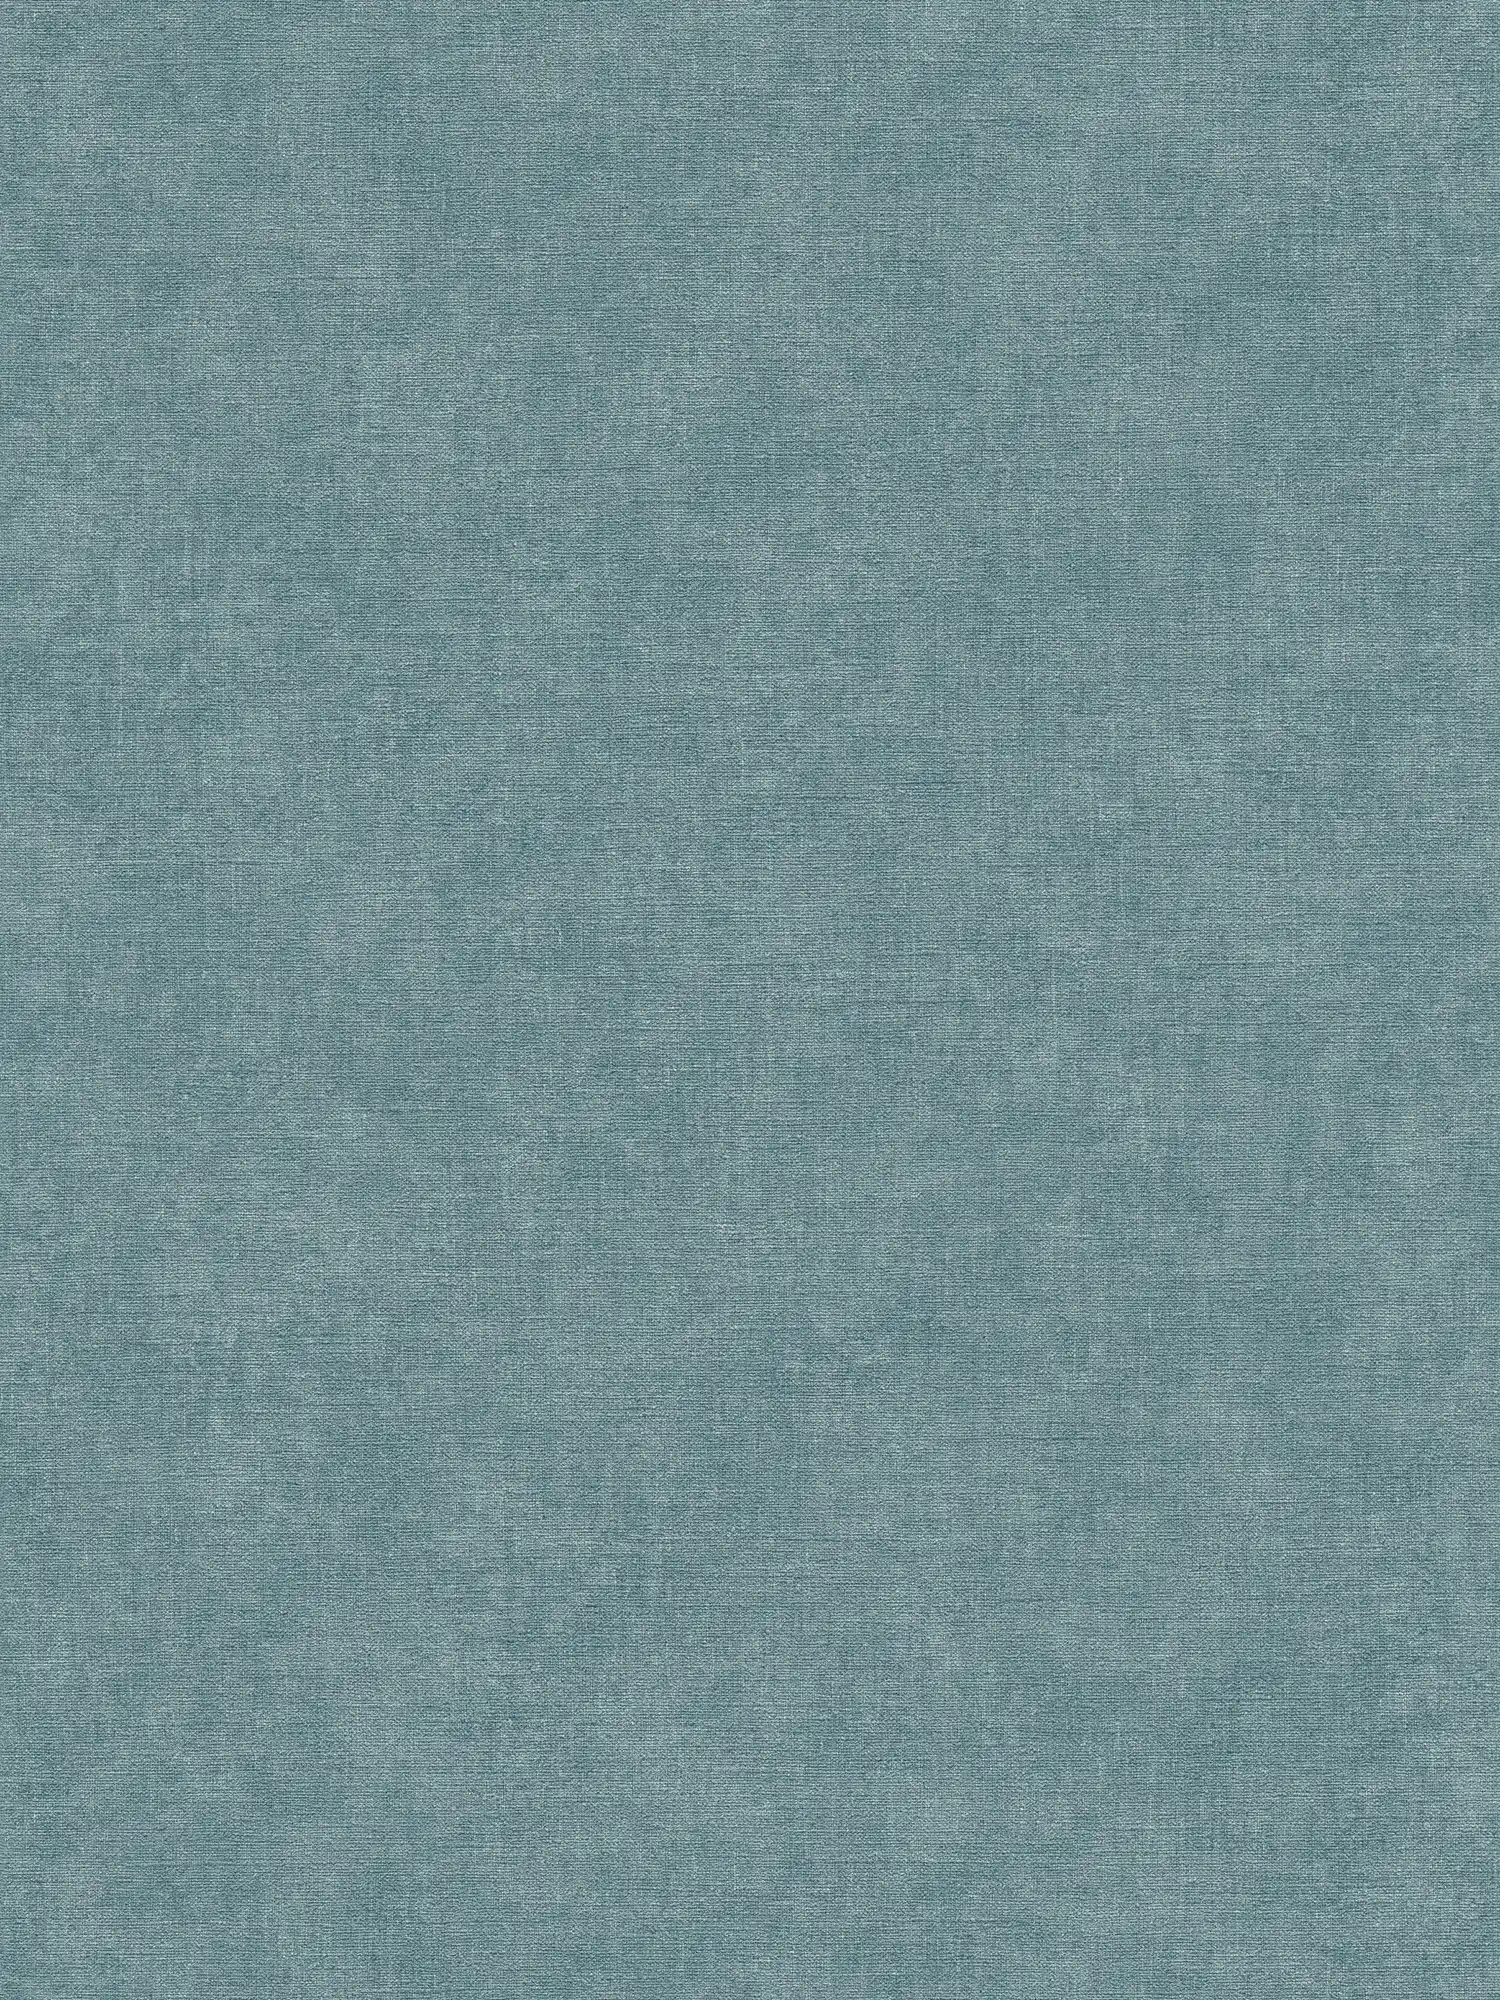 Papel pintado tejido-no tejido de textura ligera con aspecto de escayola - azul, petróleo
